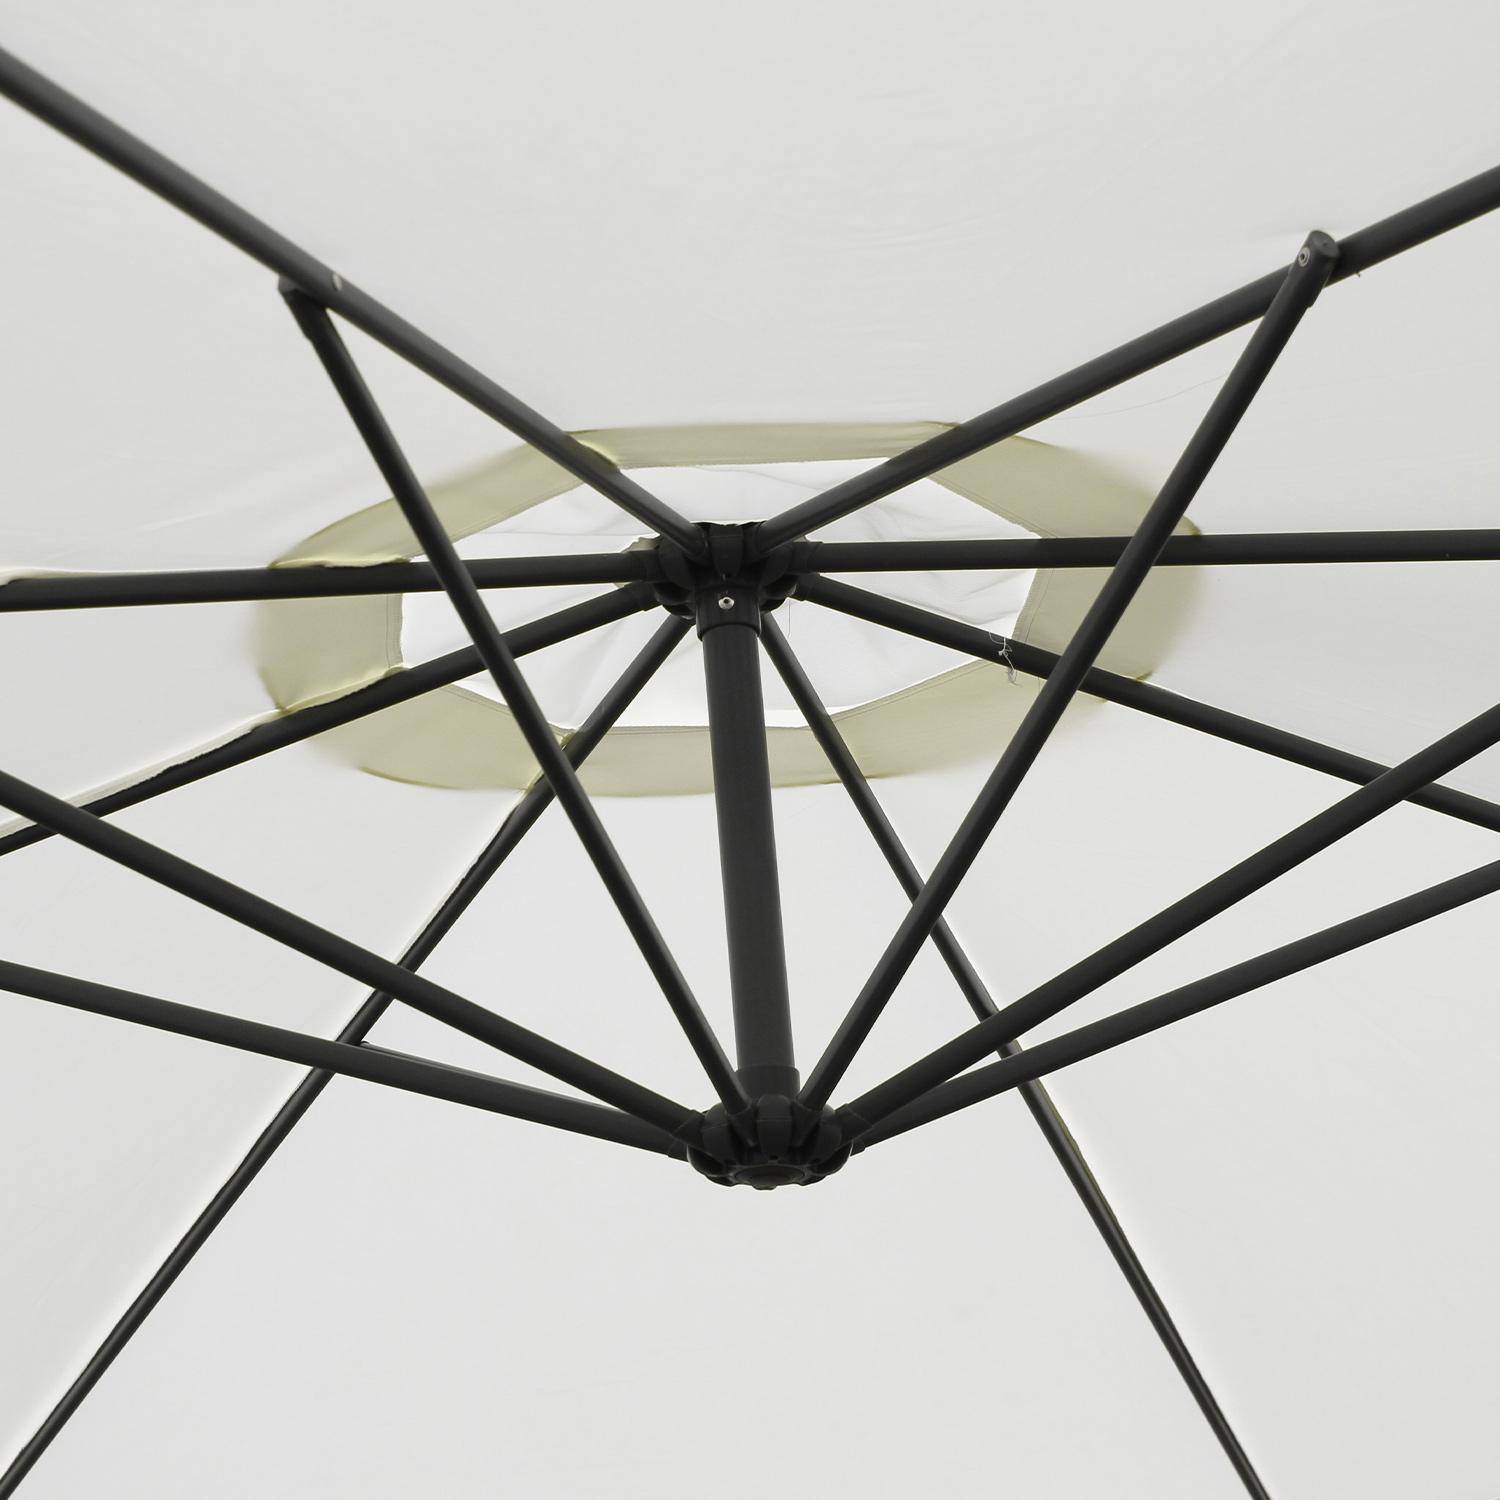 Ombrellone offset Ø350cm - Hardelot - Colore ecrù, struttura antracite, manovella a scomparsa. Photo5